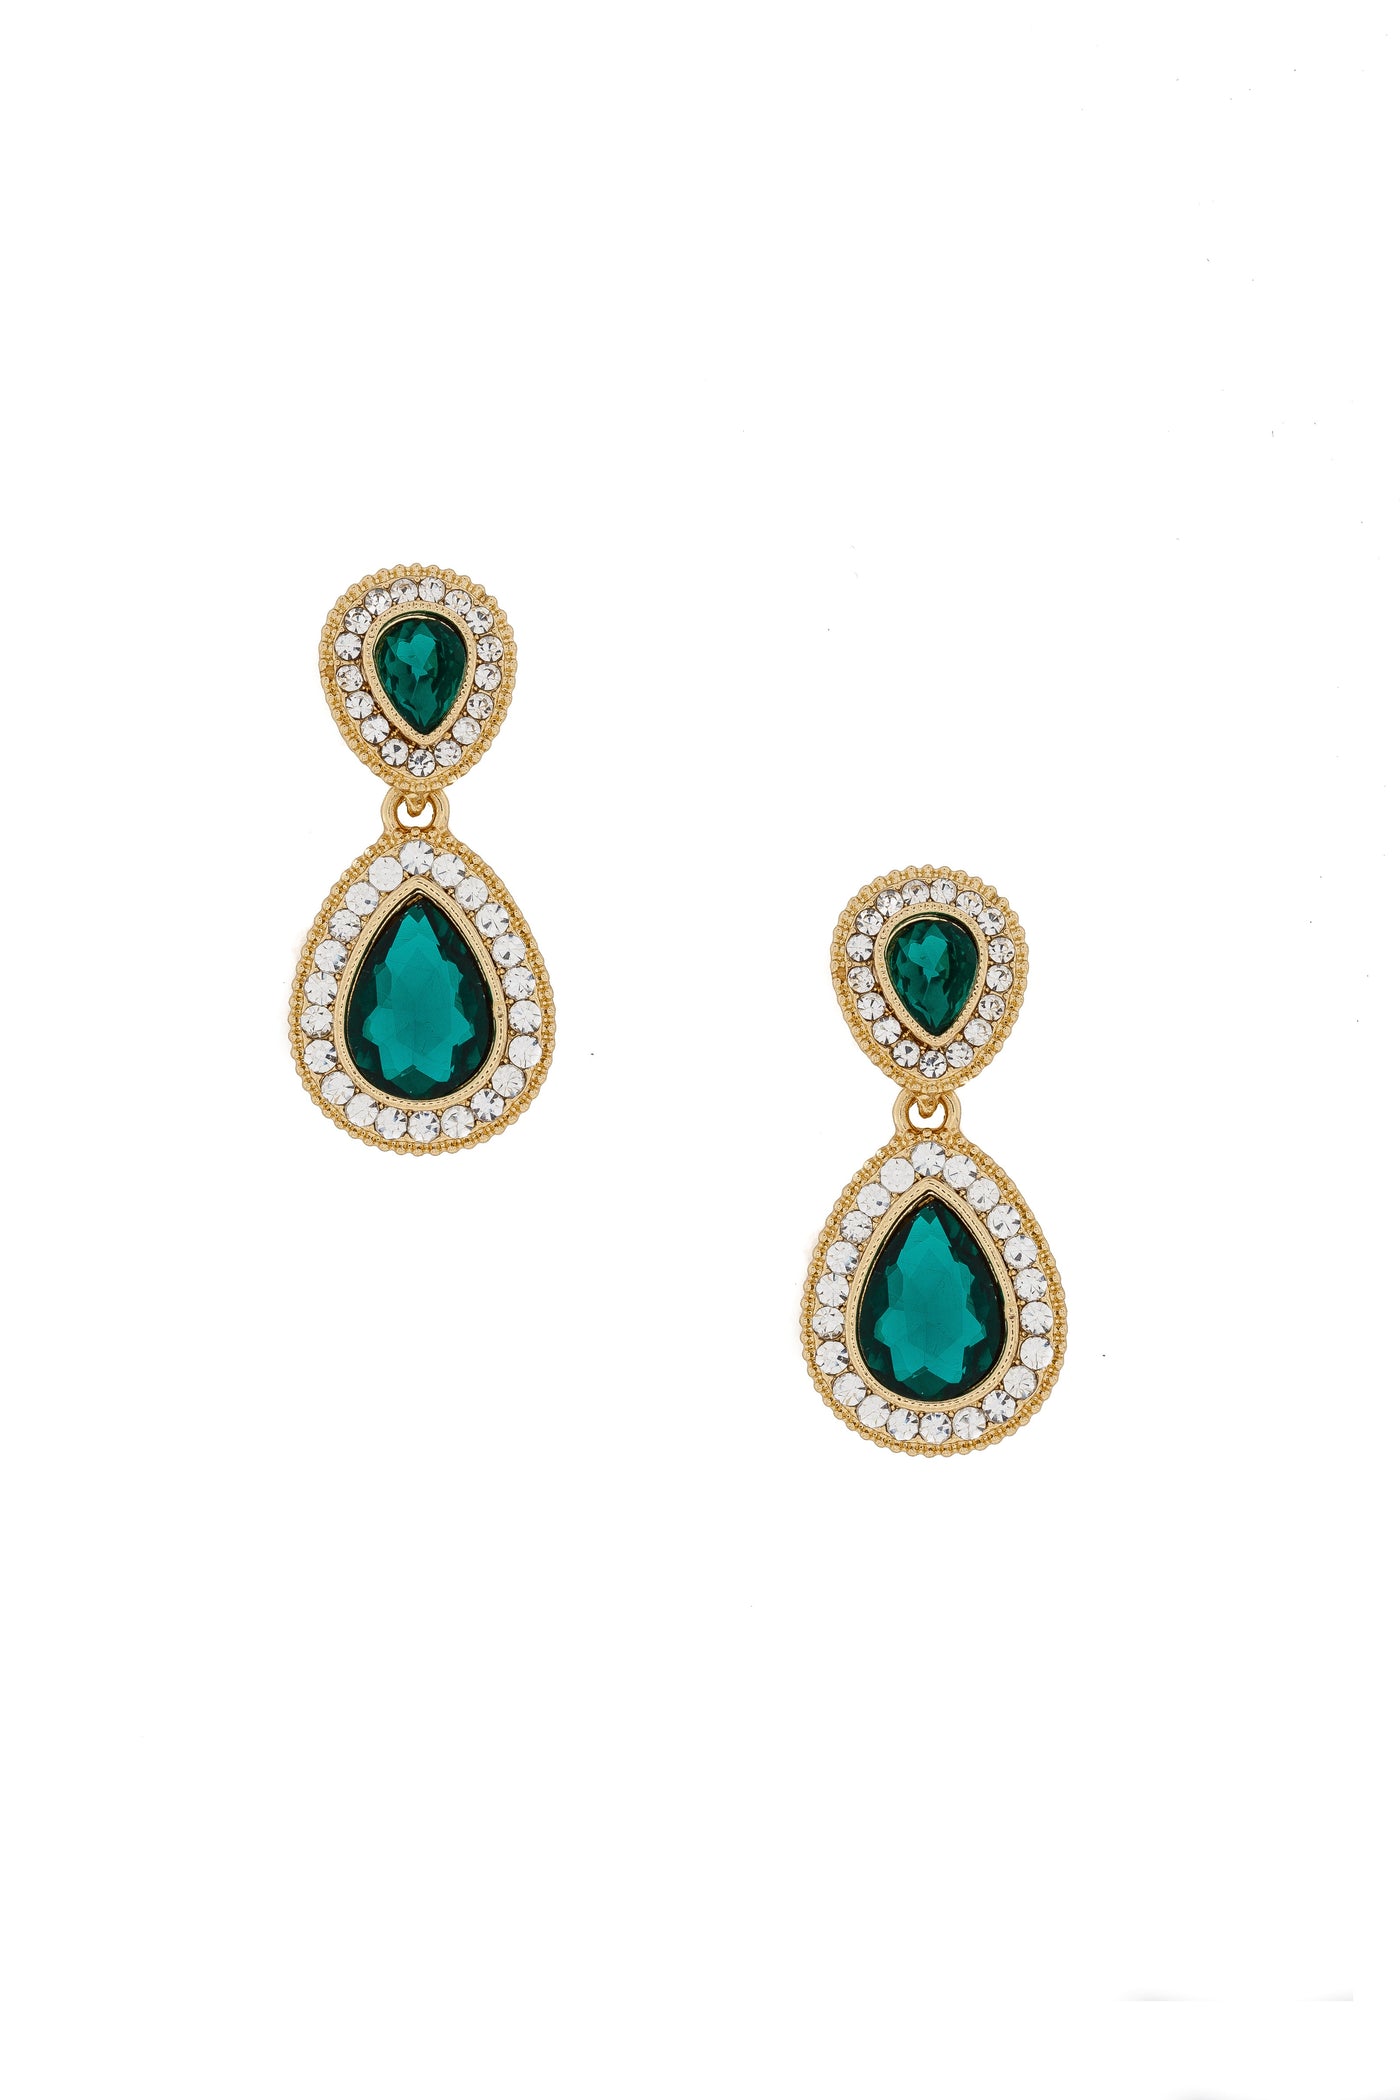 Mystique Chandelier Earrings in Emerald - SOLD OUT